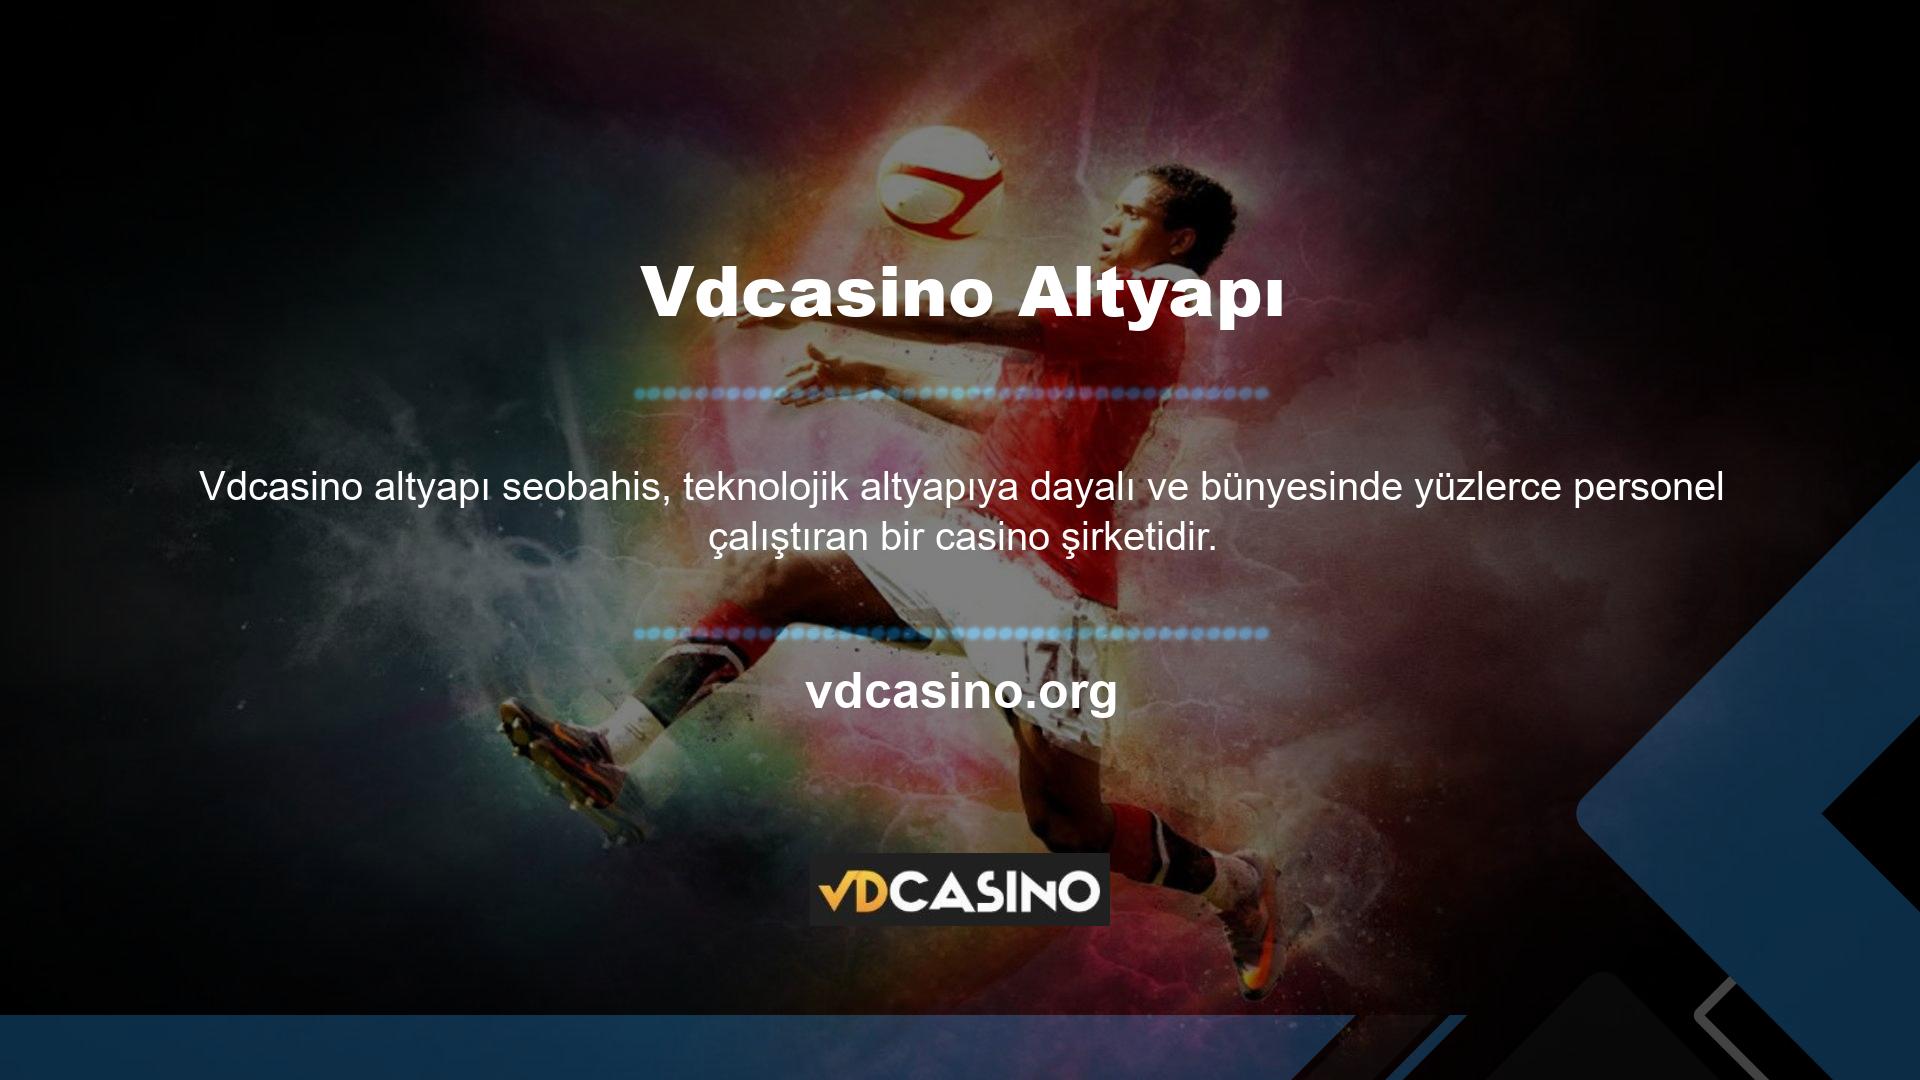 İnternette veya ISP'nizde herhangi bir sorun olmadığı sürece Vdcasino sitesi üzerinden hizmet almaya devam edebilirsiniz